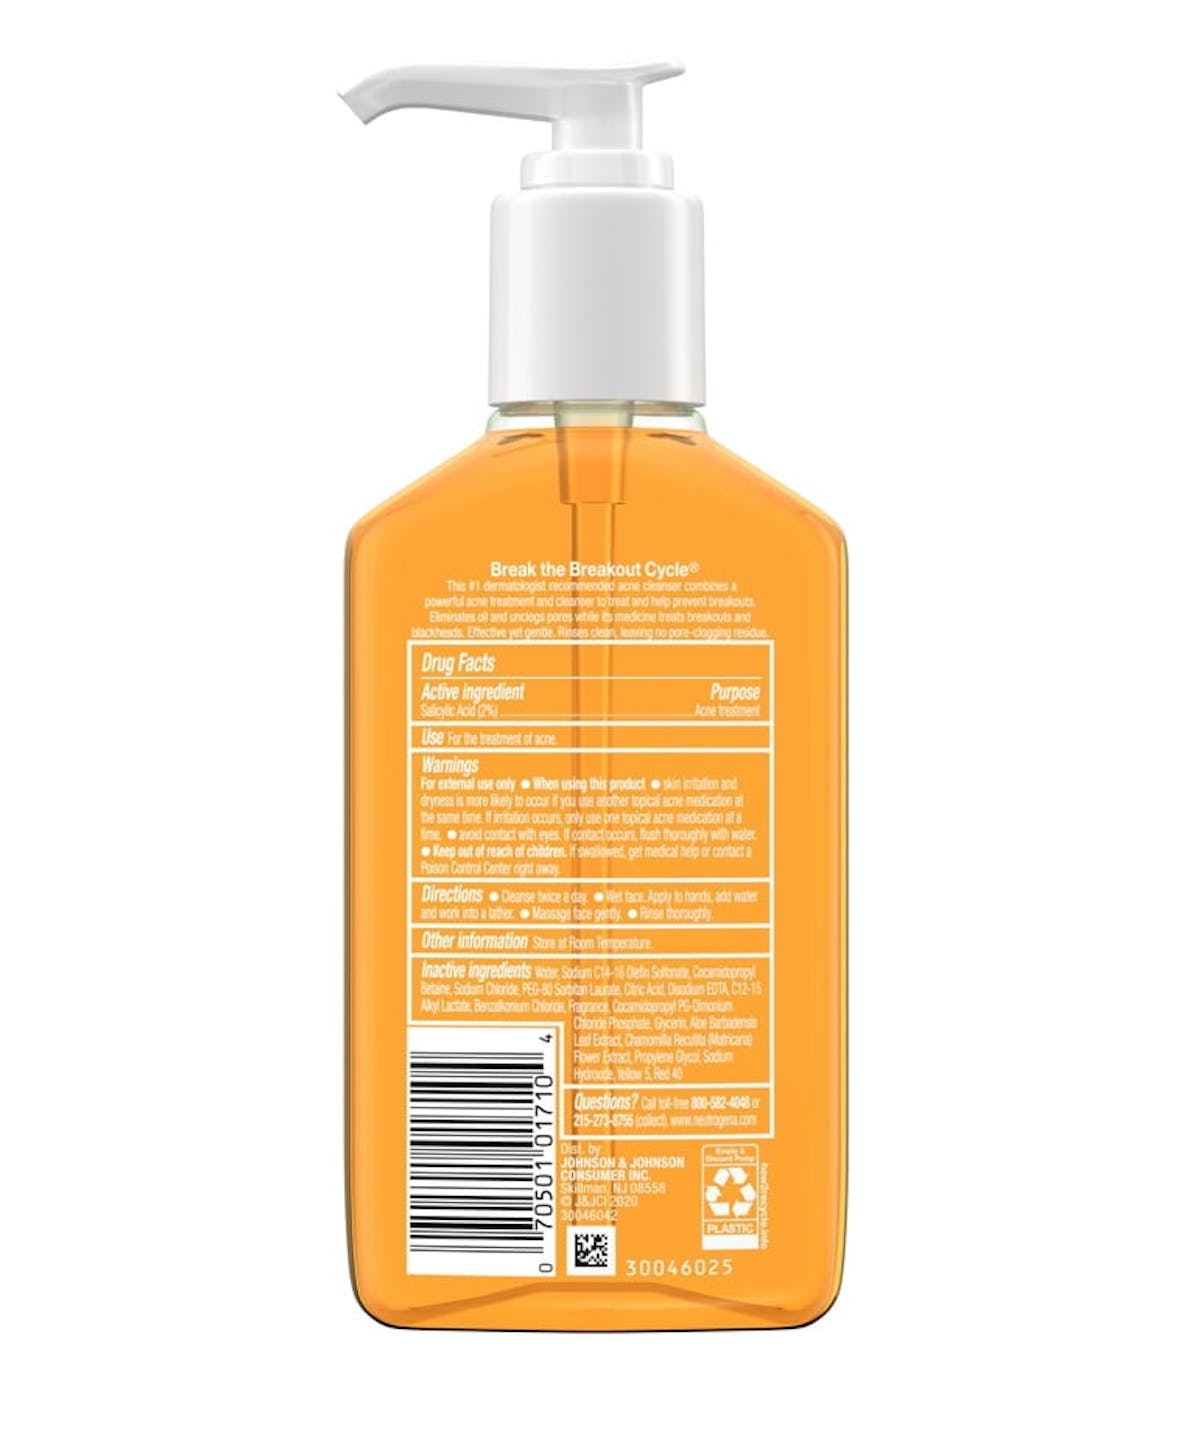 Neutrogena® Oil Free Acne Wash with Salicylic Acid, 6 fl. oz.